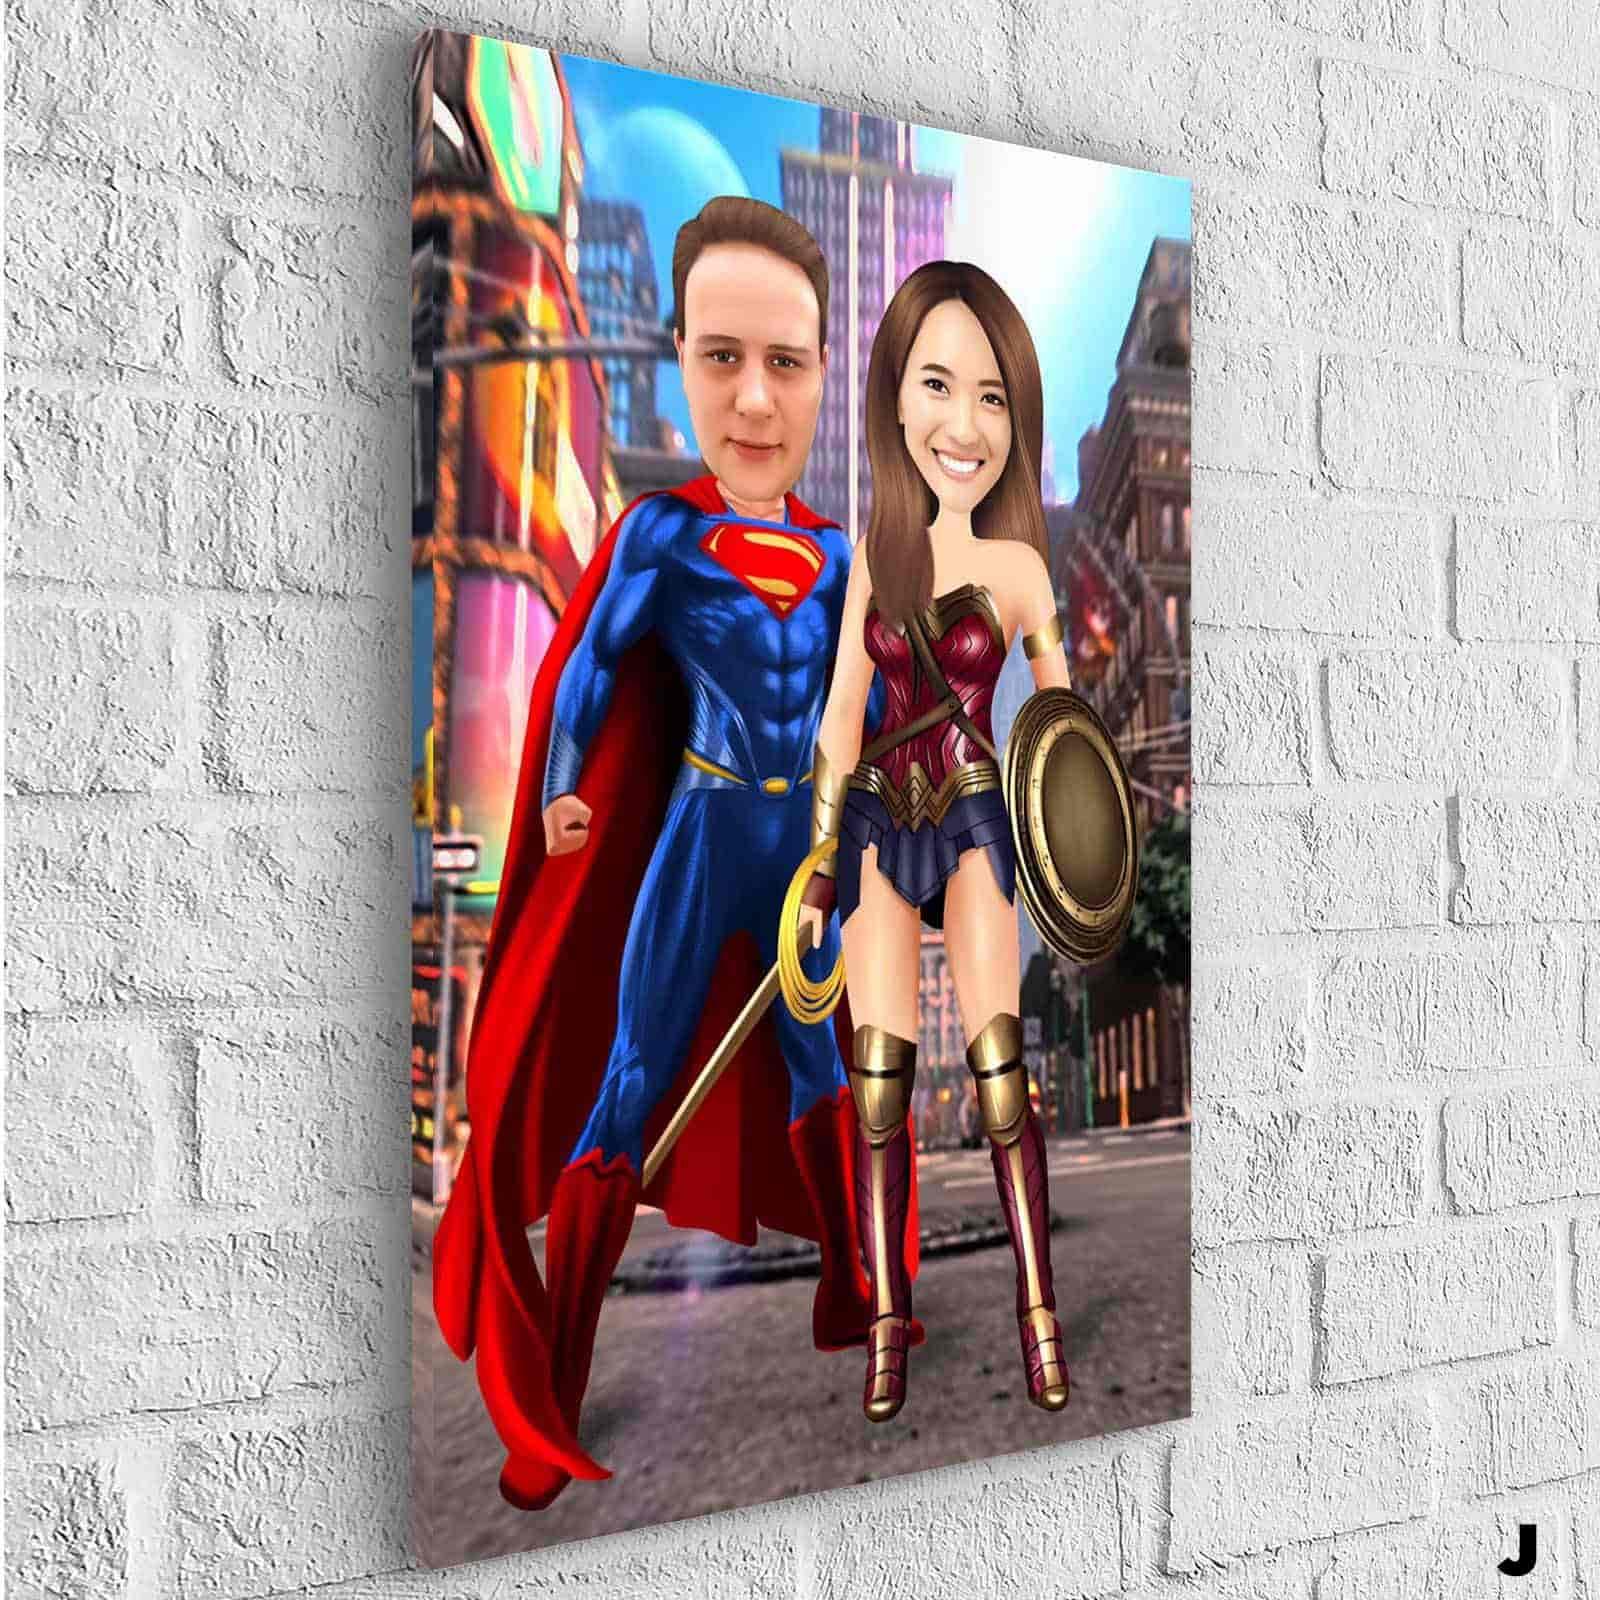 Reproduction sur toile encadrée de personnages de super-héros Marvel -  Décoration murale - 30 x 20 cm - Profondeur : 18 mm